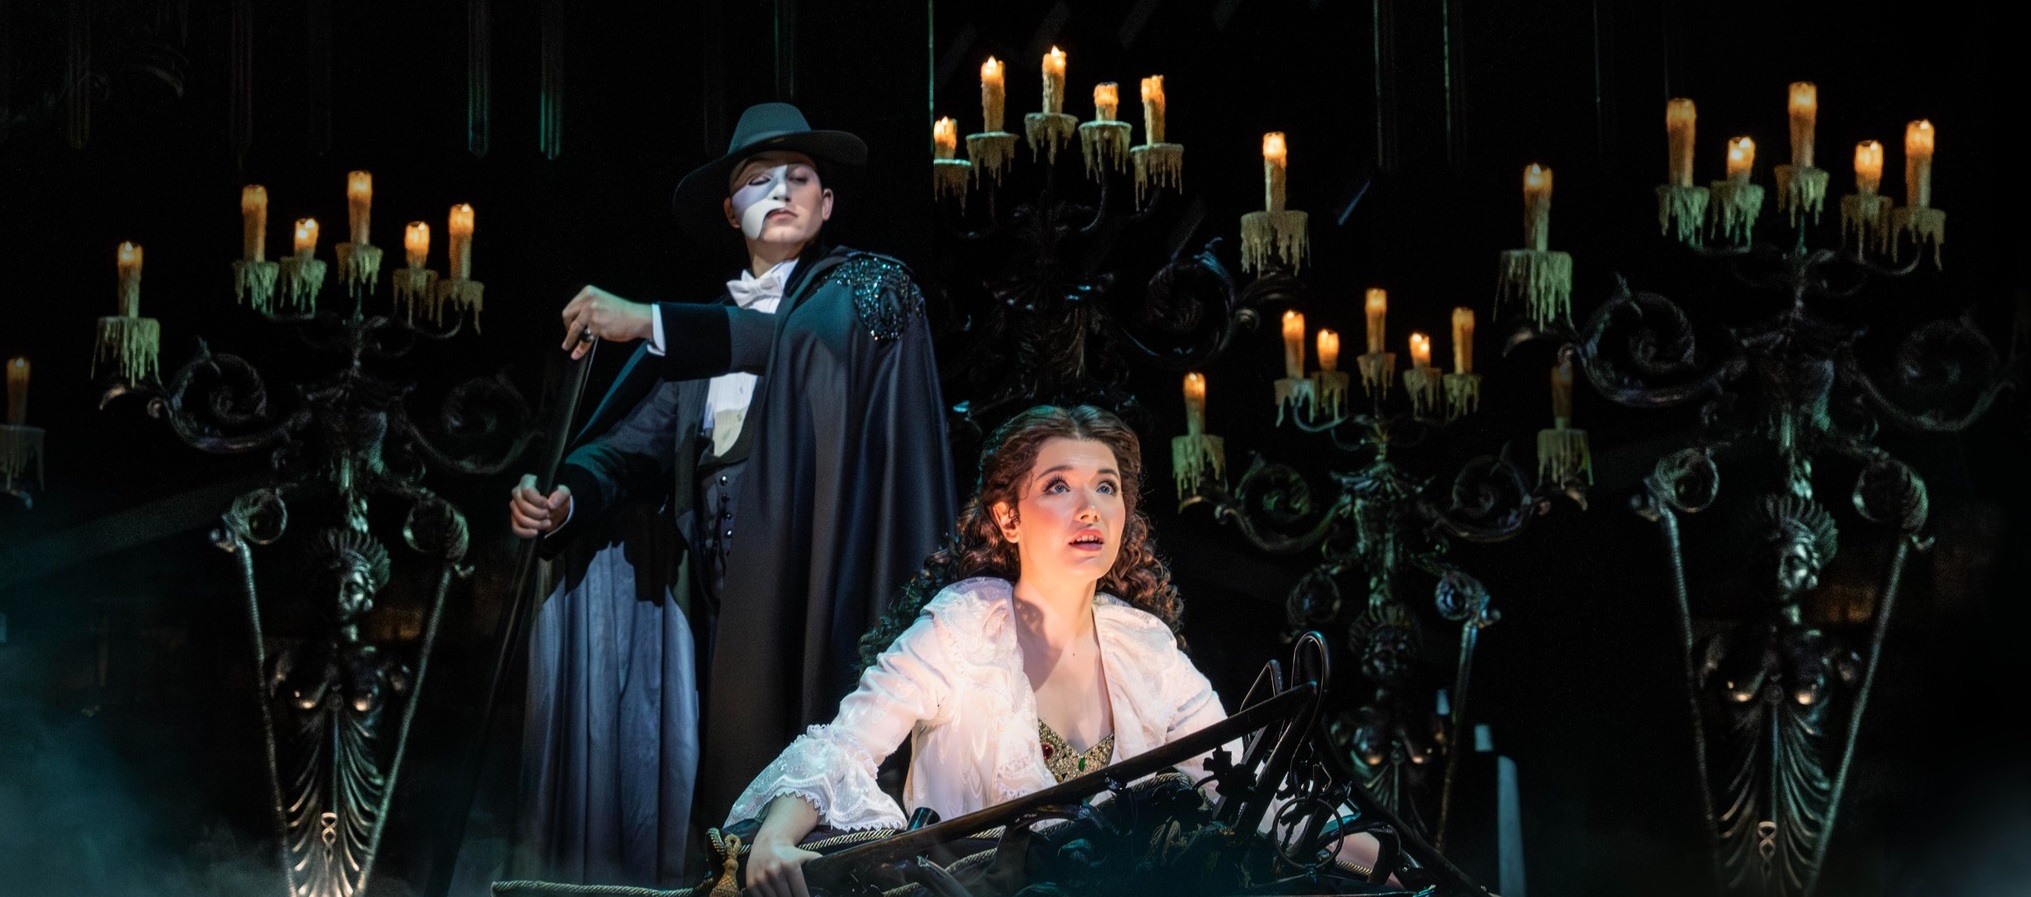 Най-прочутият мюзикъл в света „Фантомът на операта” на Андрю Лойд